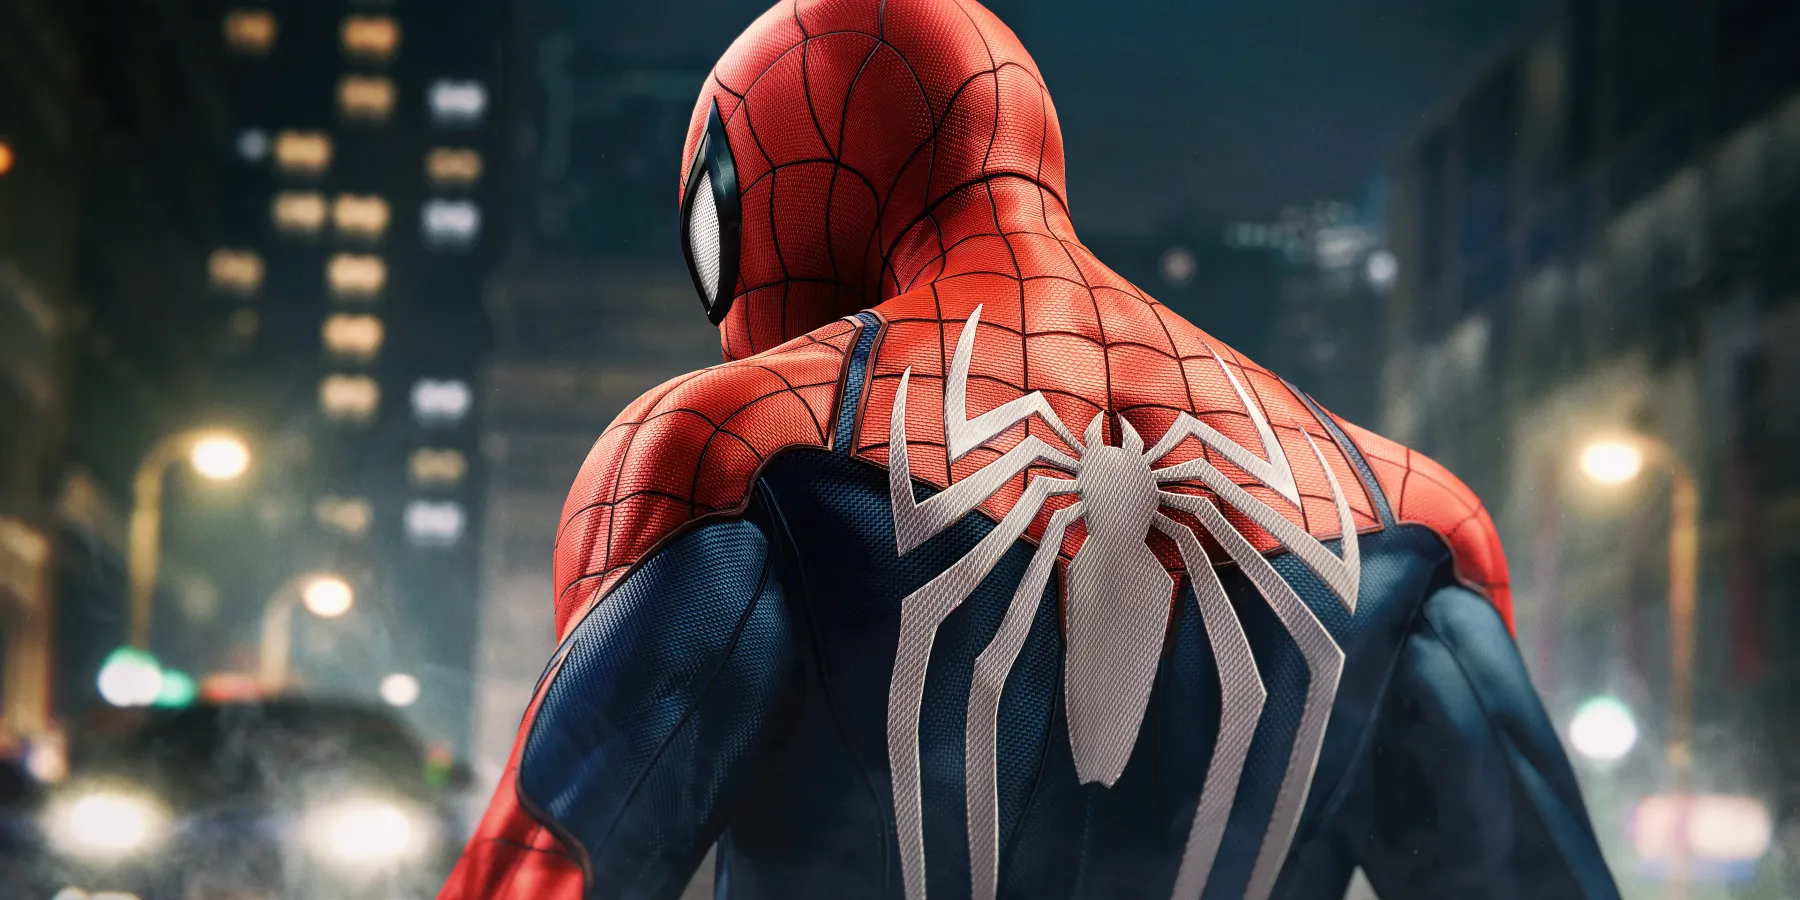 marvel's spider-man remastered skins skins skins cosmetics mods potential